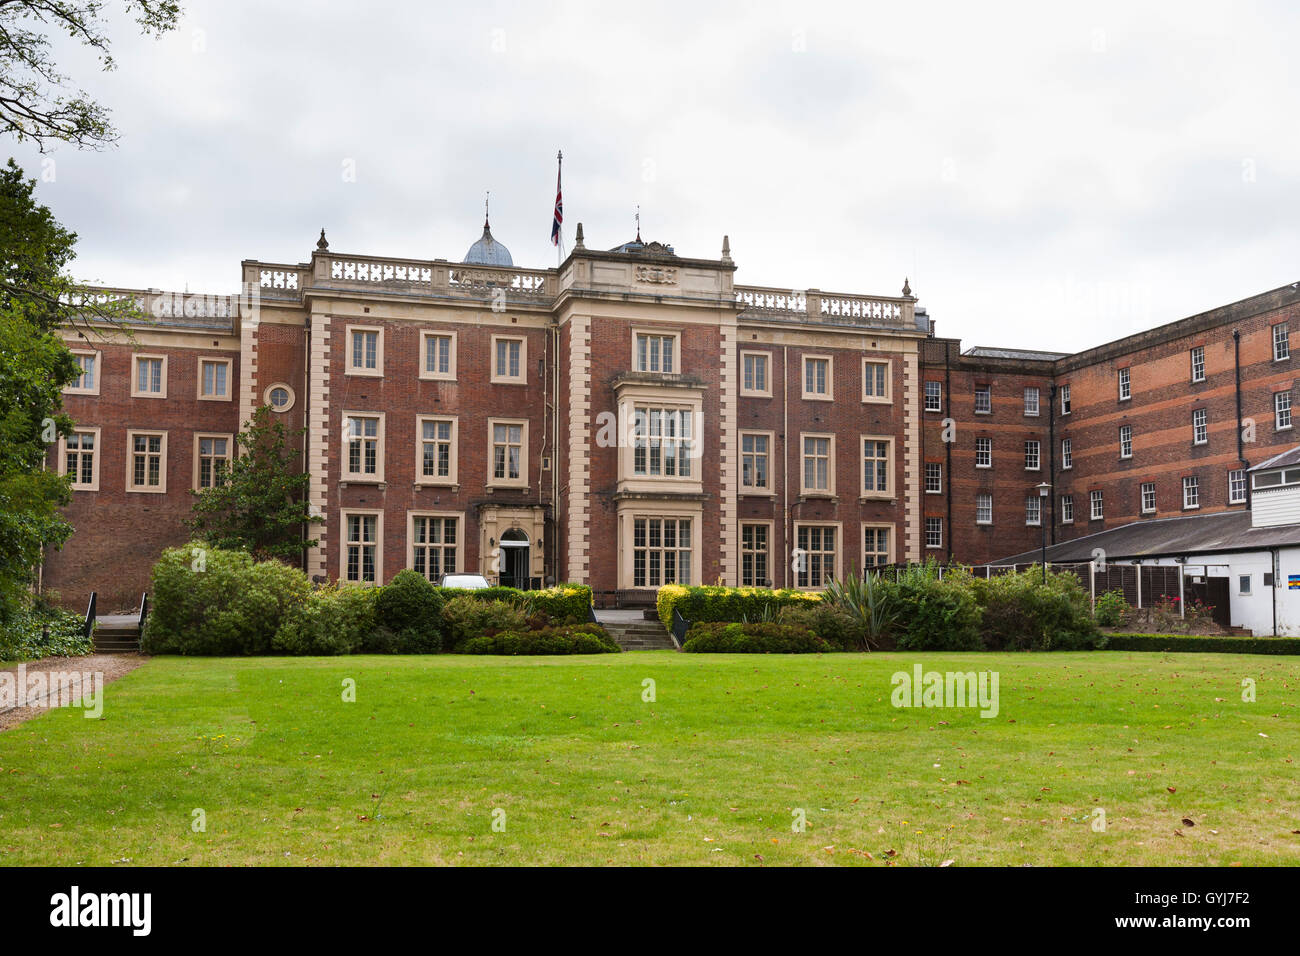 L'aspect arrière / arrière de Kneller Hall, Whitton, Twickenham, accueil de l'École Royale Militaire de la musique, et le Musée de la musique de l'armée. UK Banque D'Images